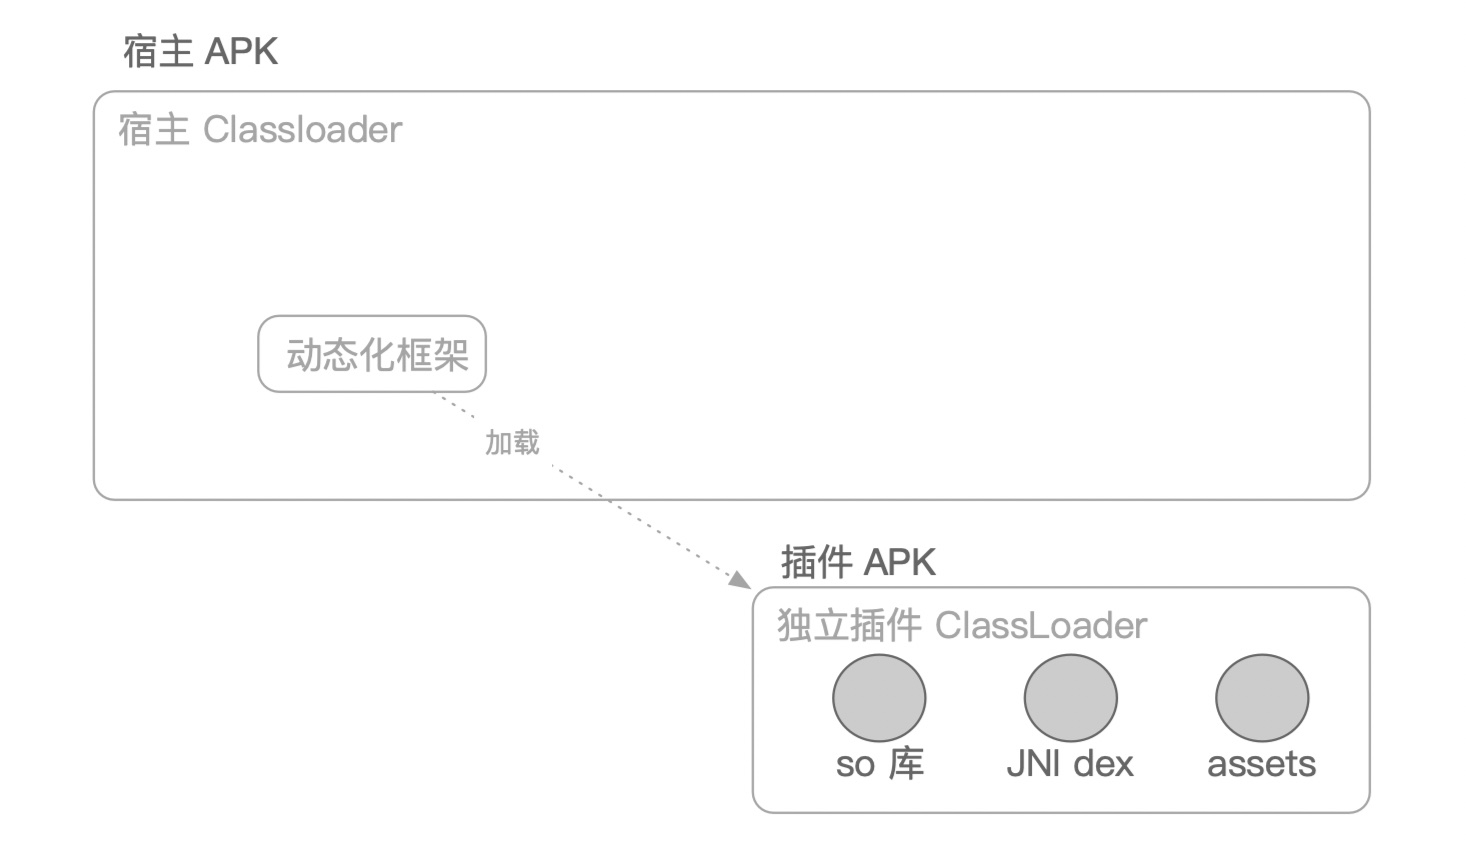 jni-separated diagram